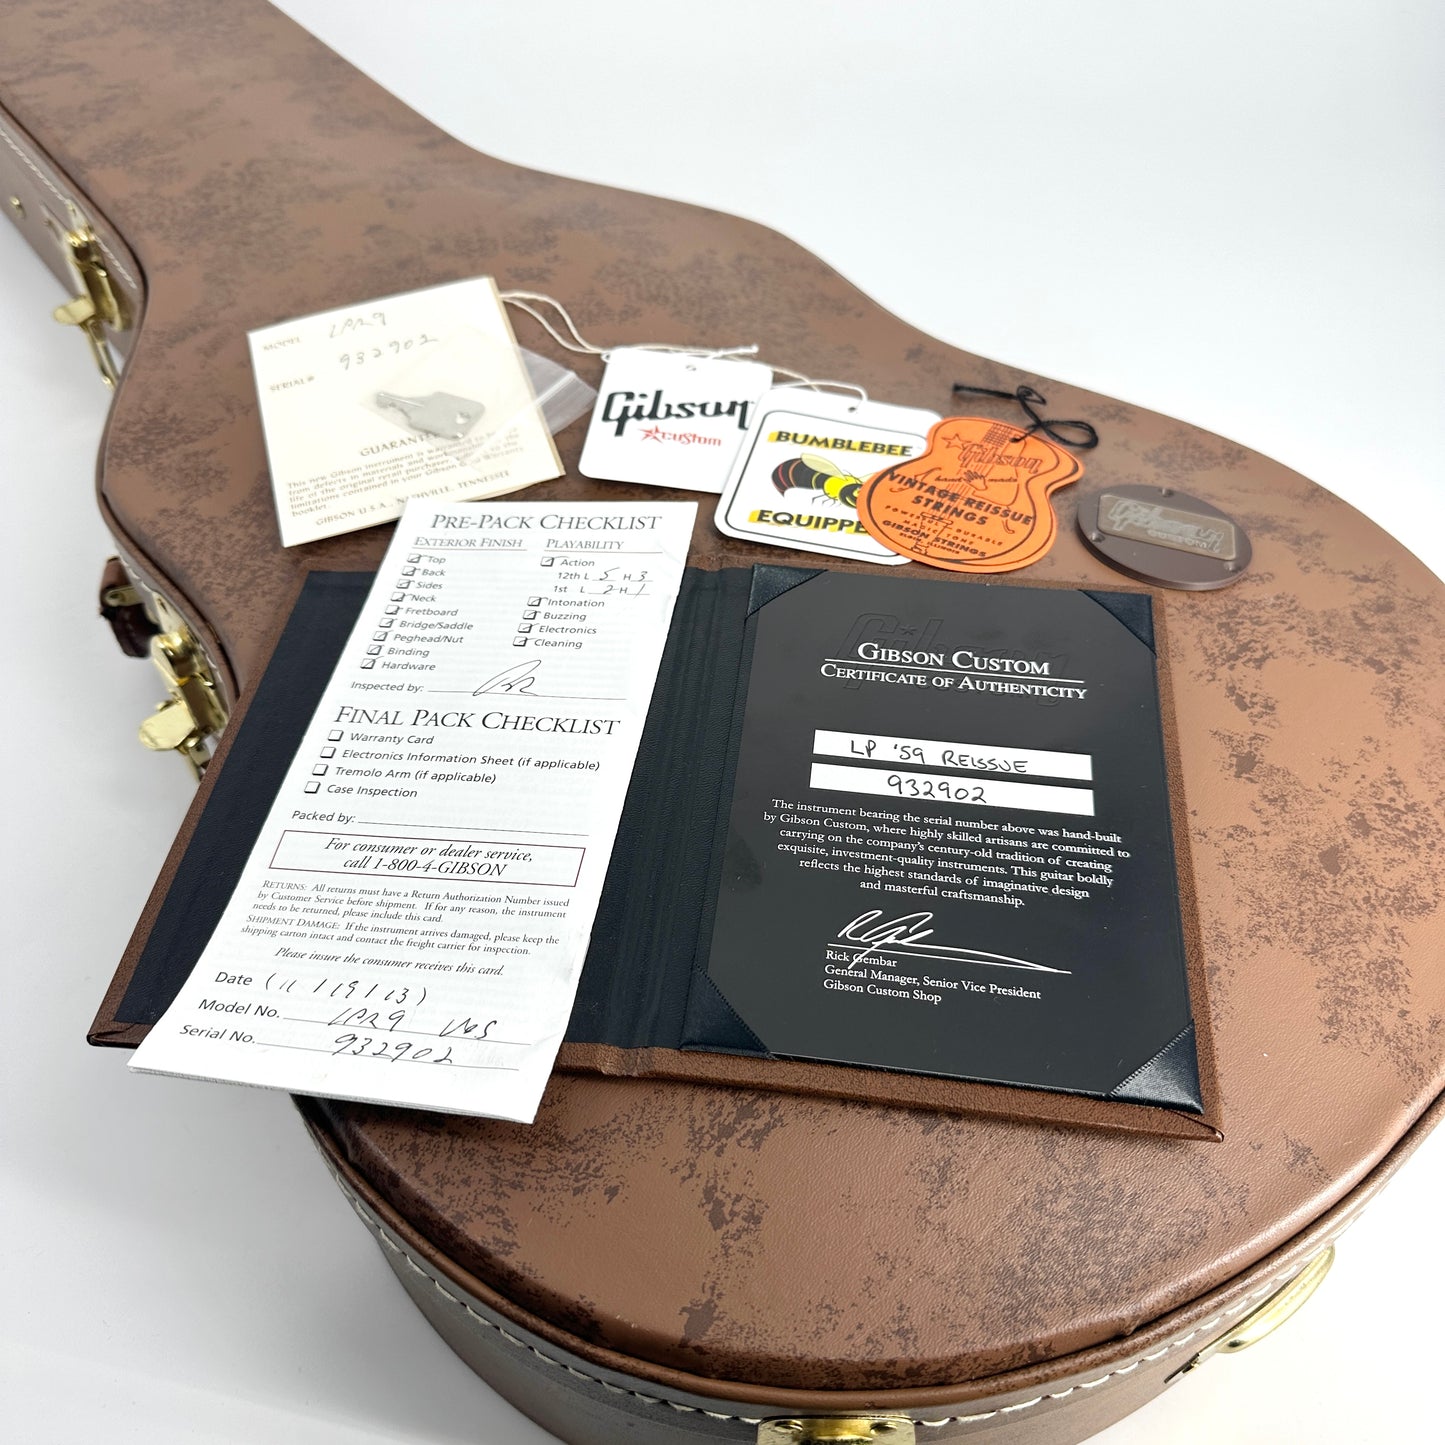 2013 Gibson Custom Shop 1959 Les Paul '59 Reissue - R9 - Lemon Burst